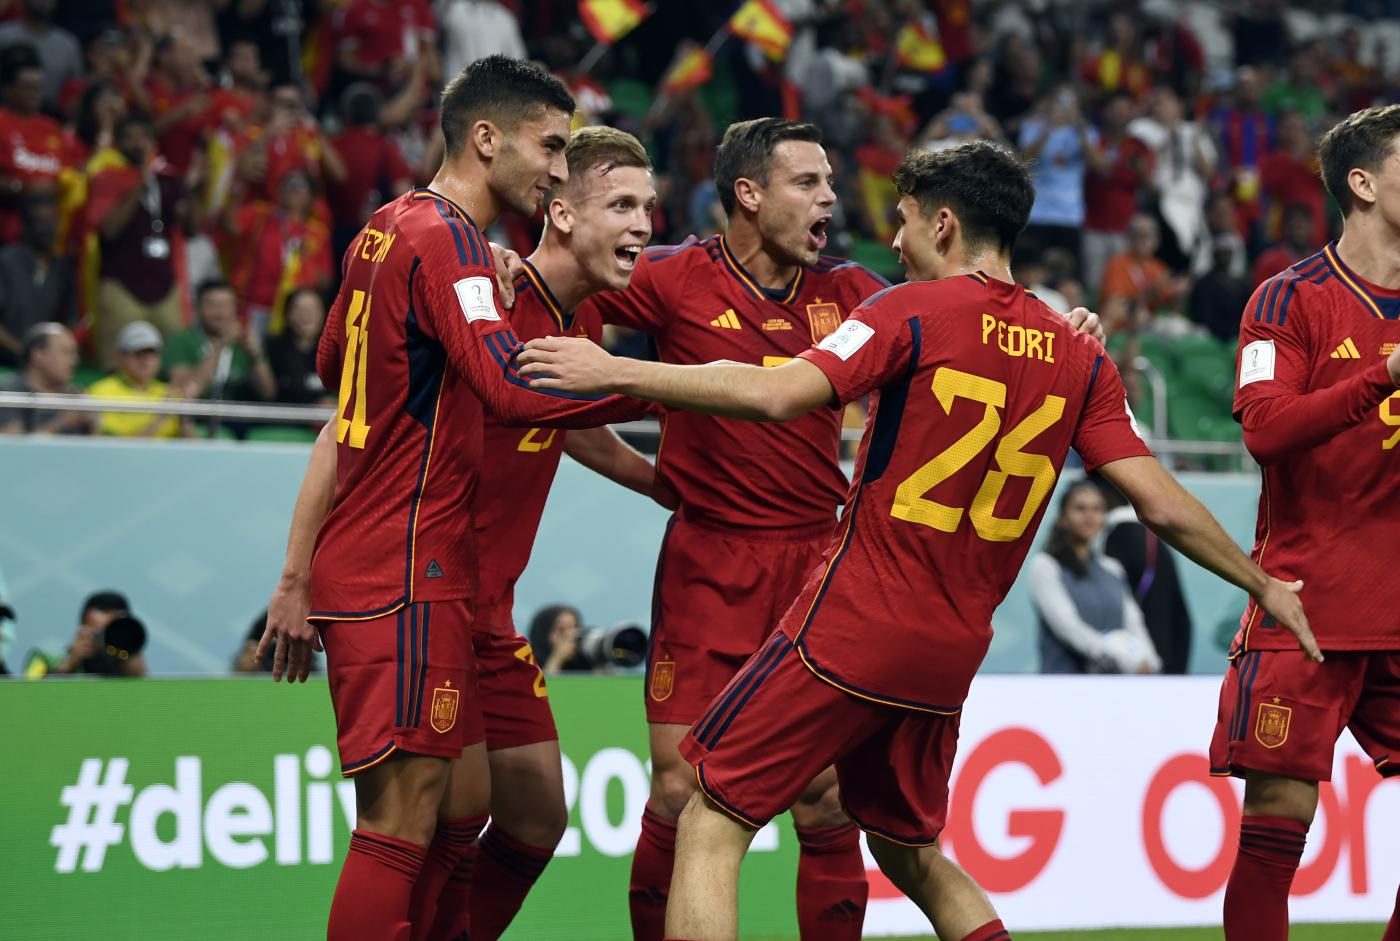 LIVE Marocco Spagna 0 0, Mondiali calcio 2022 in DIRETTA: Dani Olmo al volo manda alto